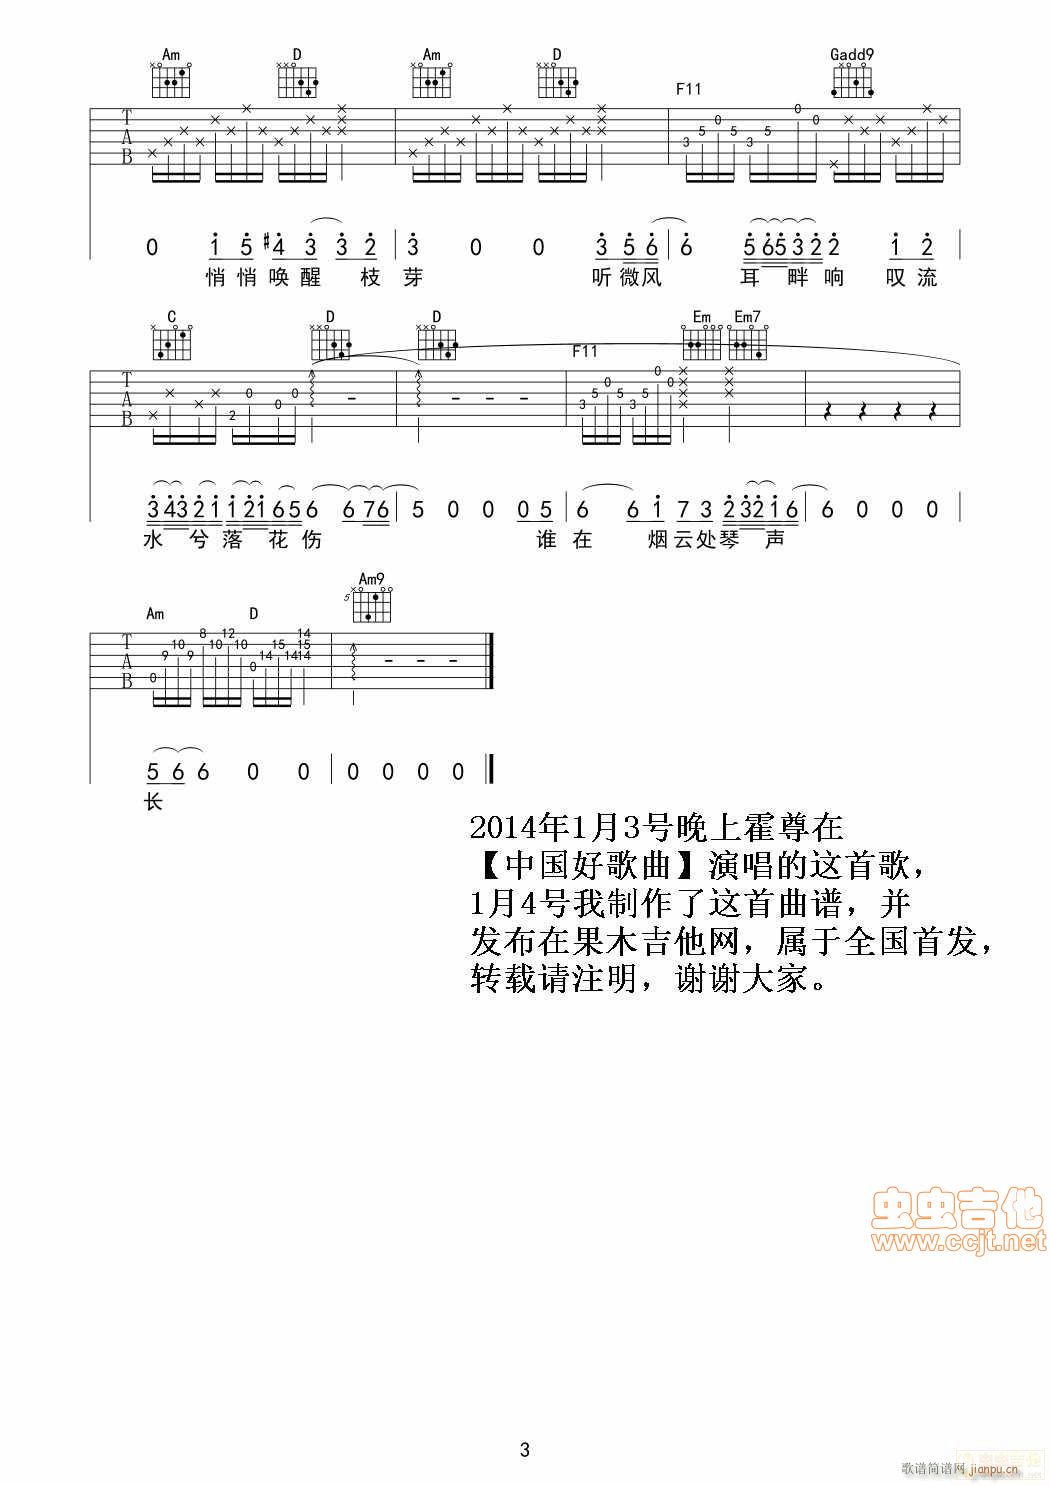 卷珠帘 中国好歌曲曲目(吉他谱)3